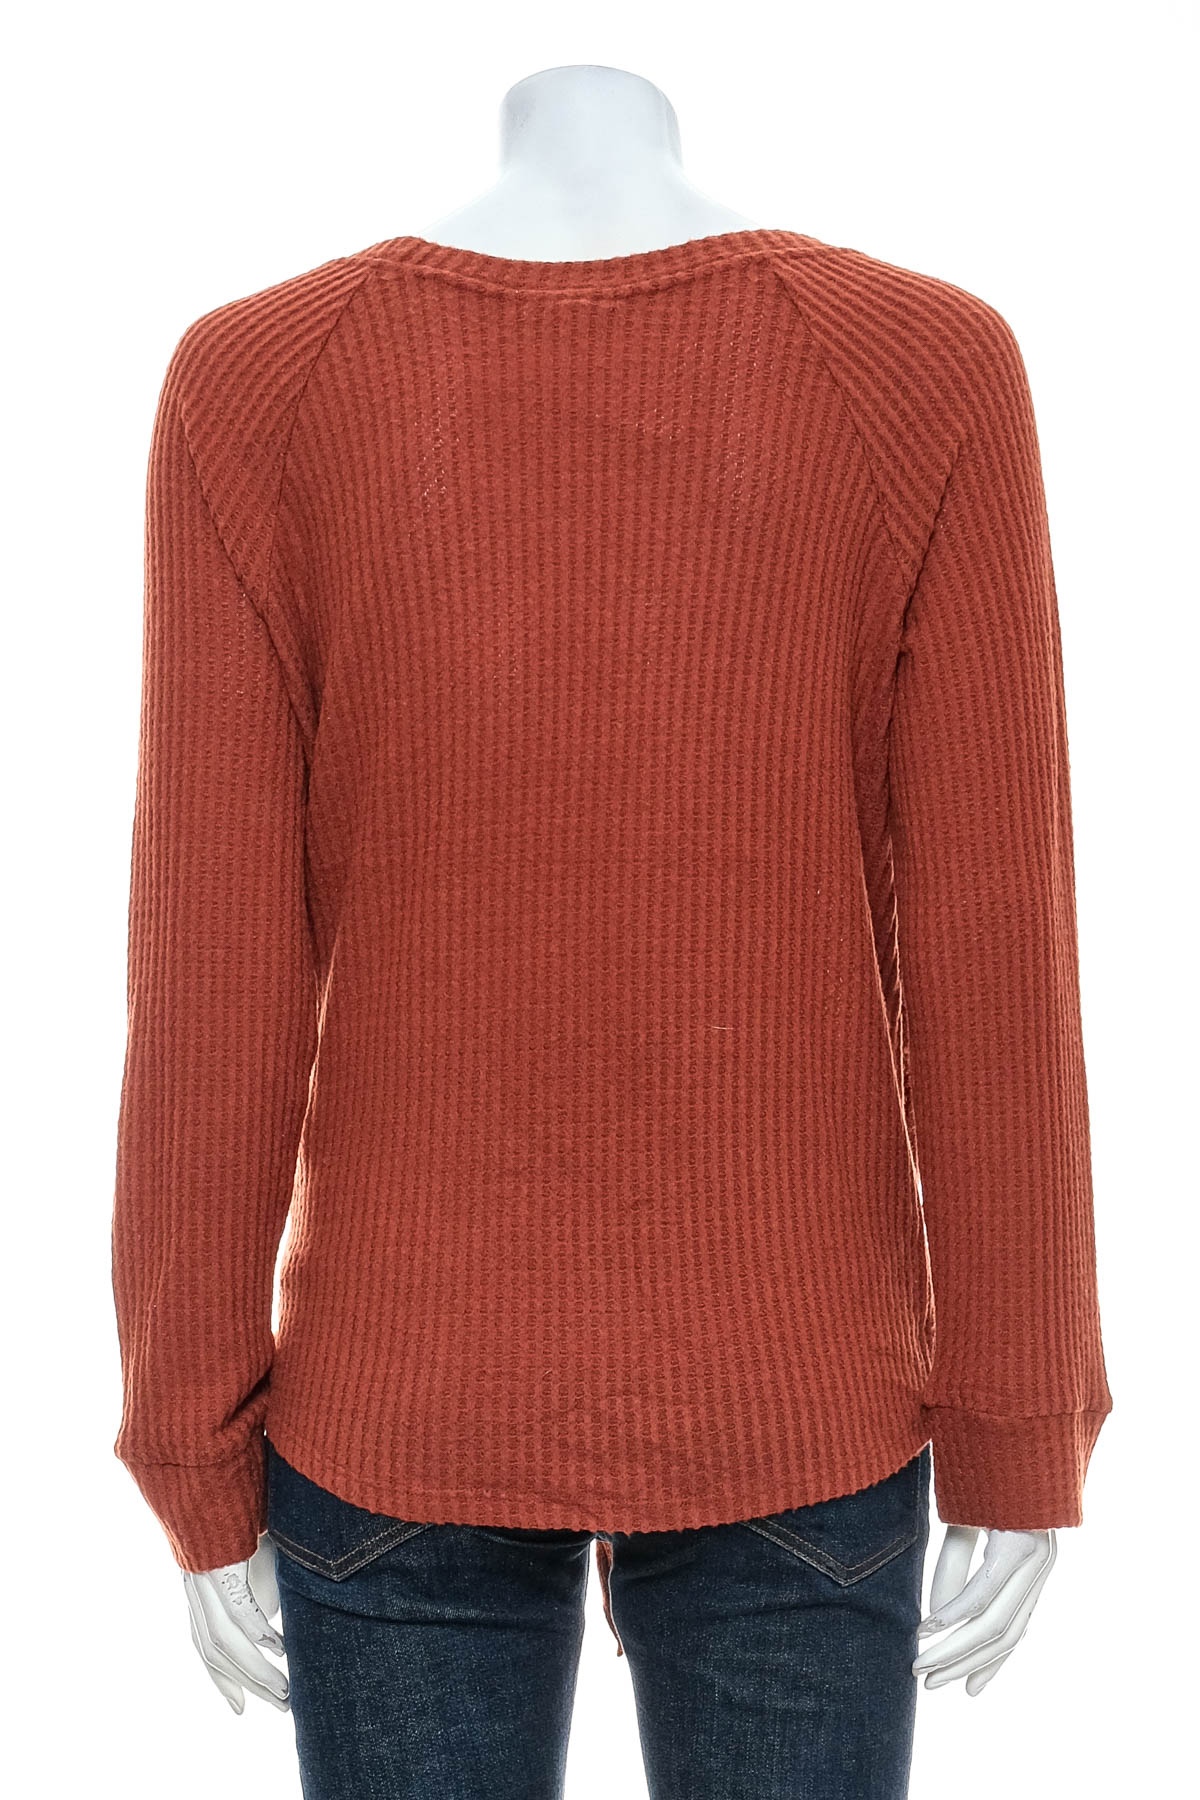 Women's sweater - Nine Britton - 1